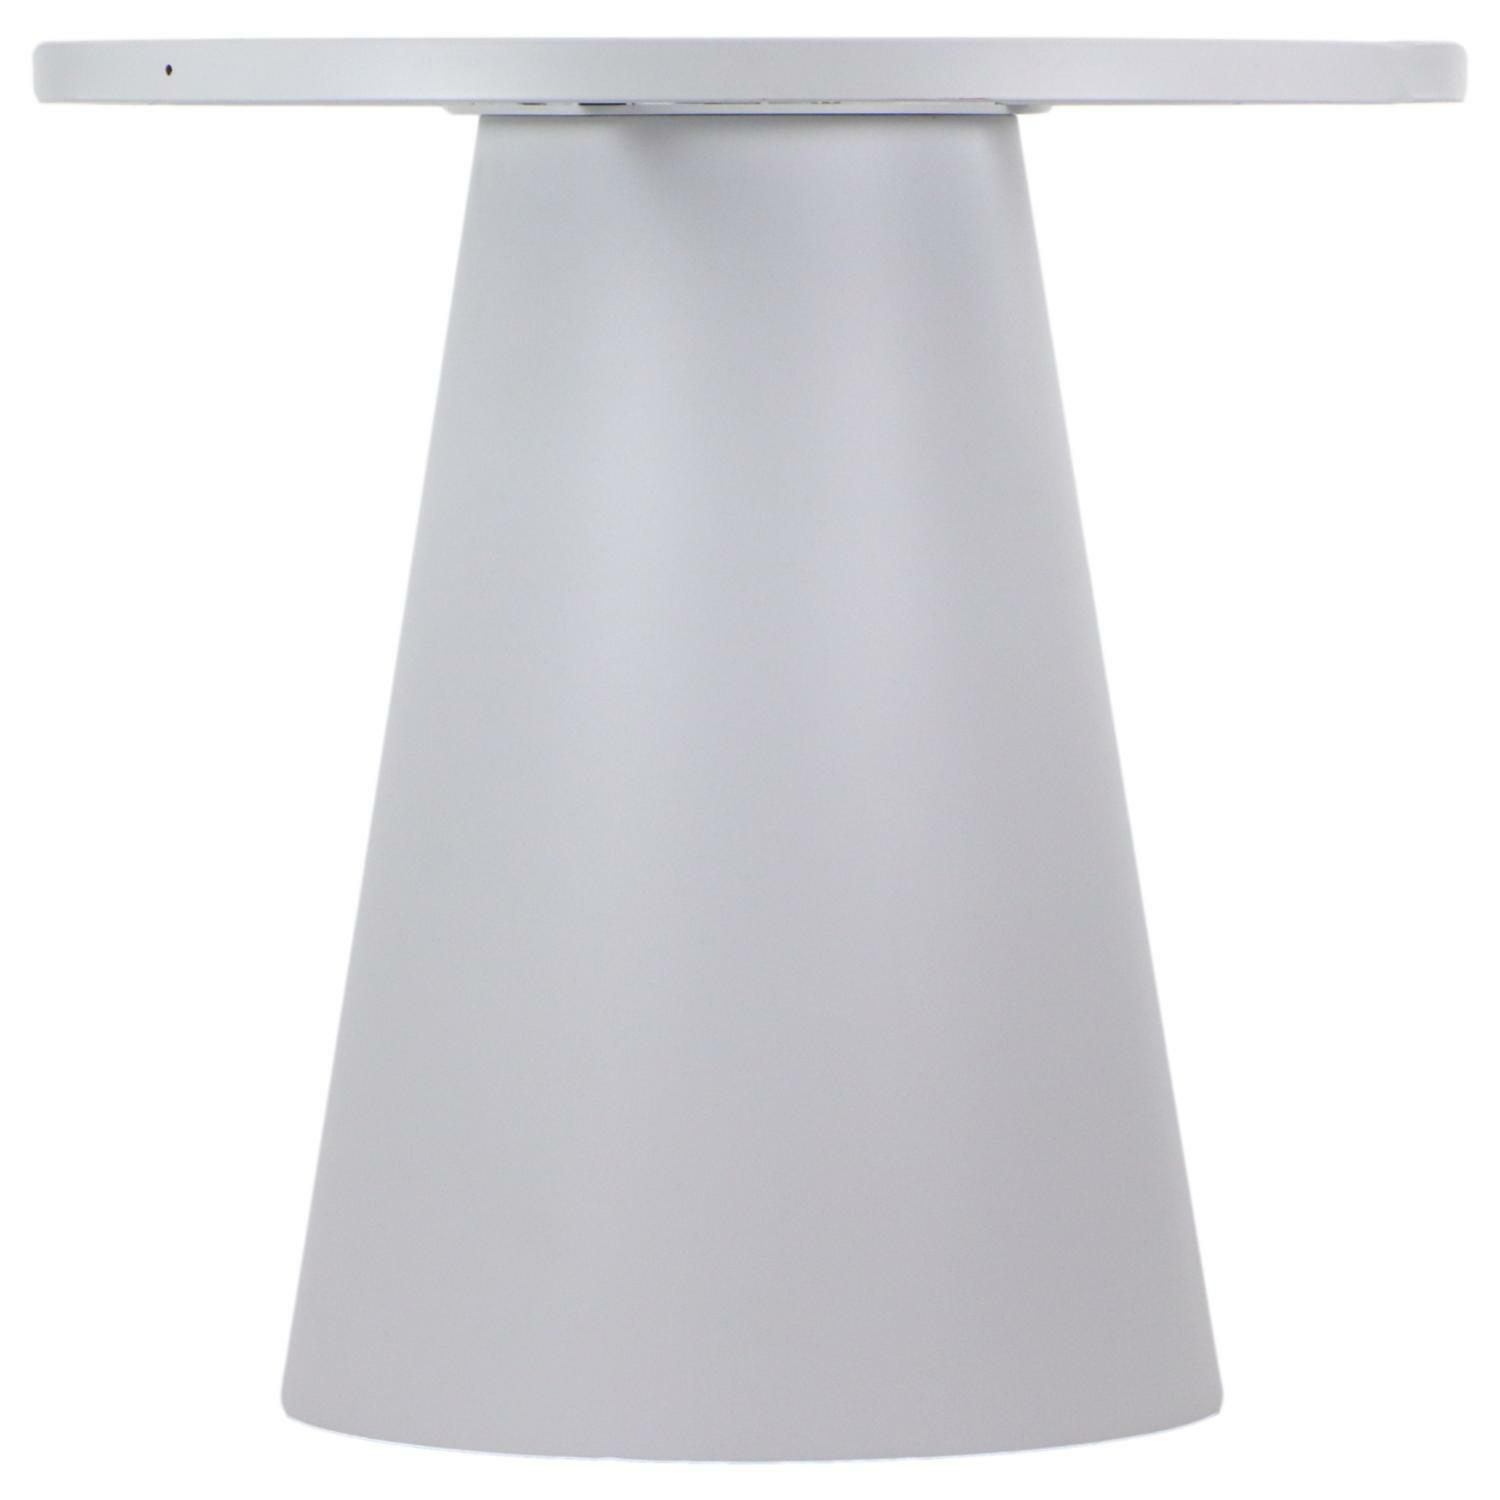 Podstawa stolika SH-6671-2/W wysokość 72,5 cm, kolor biały